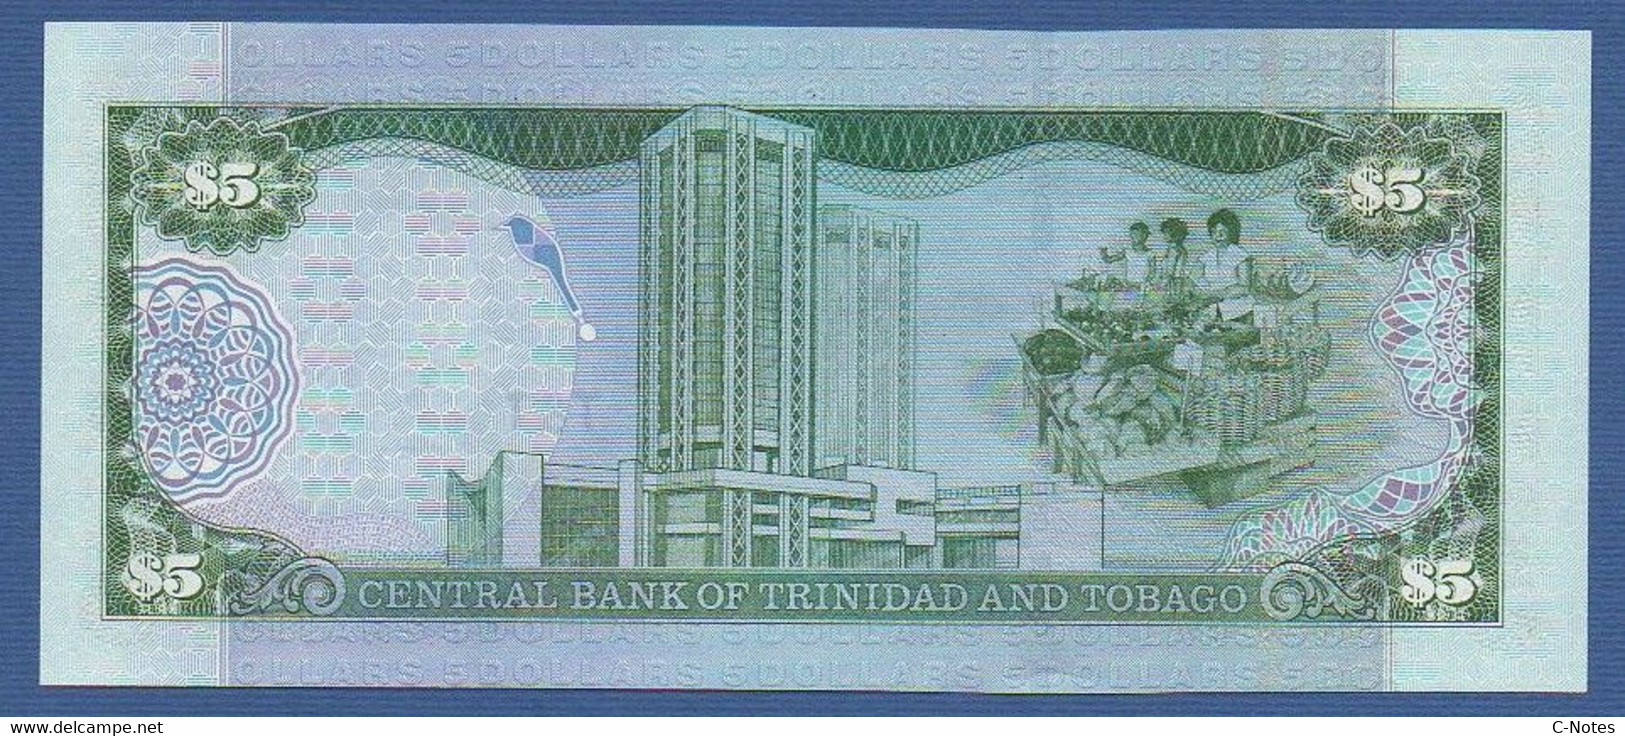 TRINIDAD & TOBAGO - P.42b – 5 Dollars 2002 UNC, Serie AM510295 - Trinidad Y Tobago